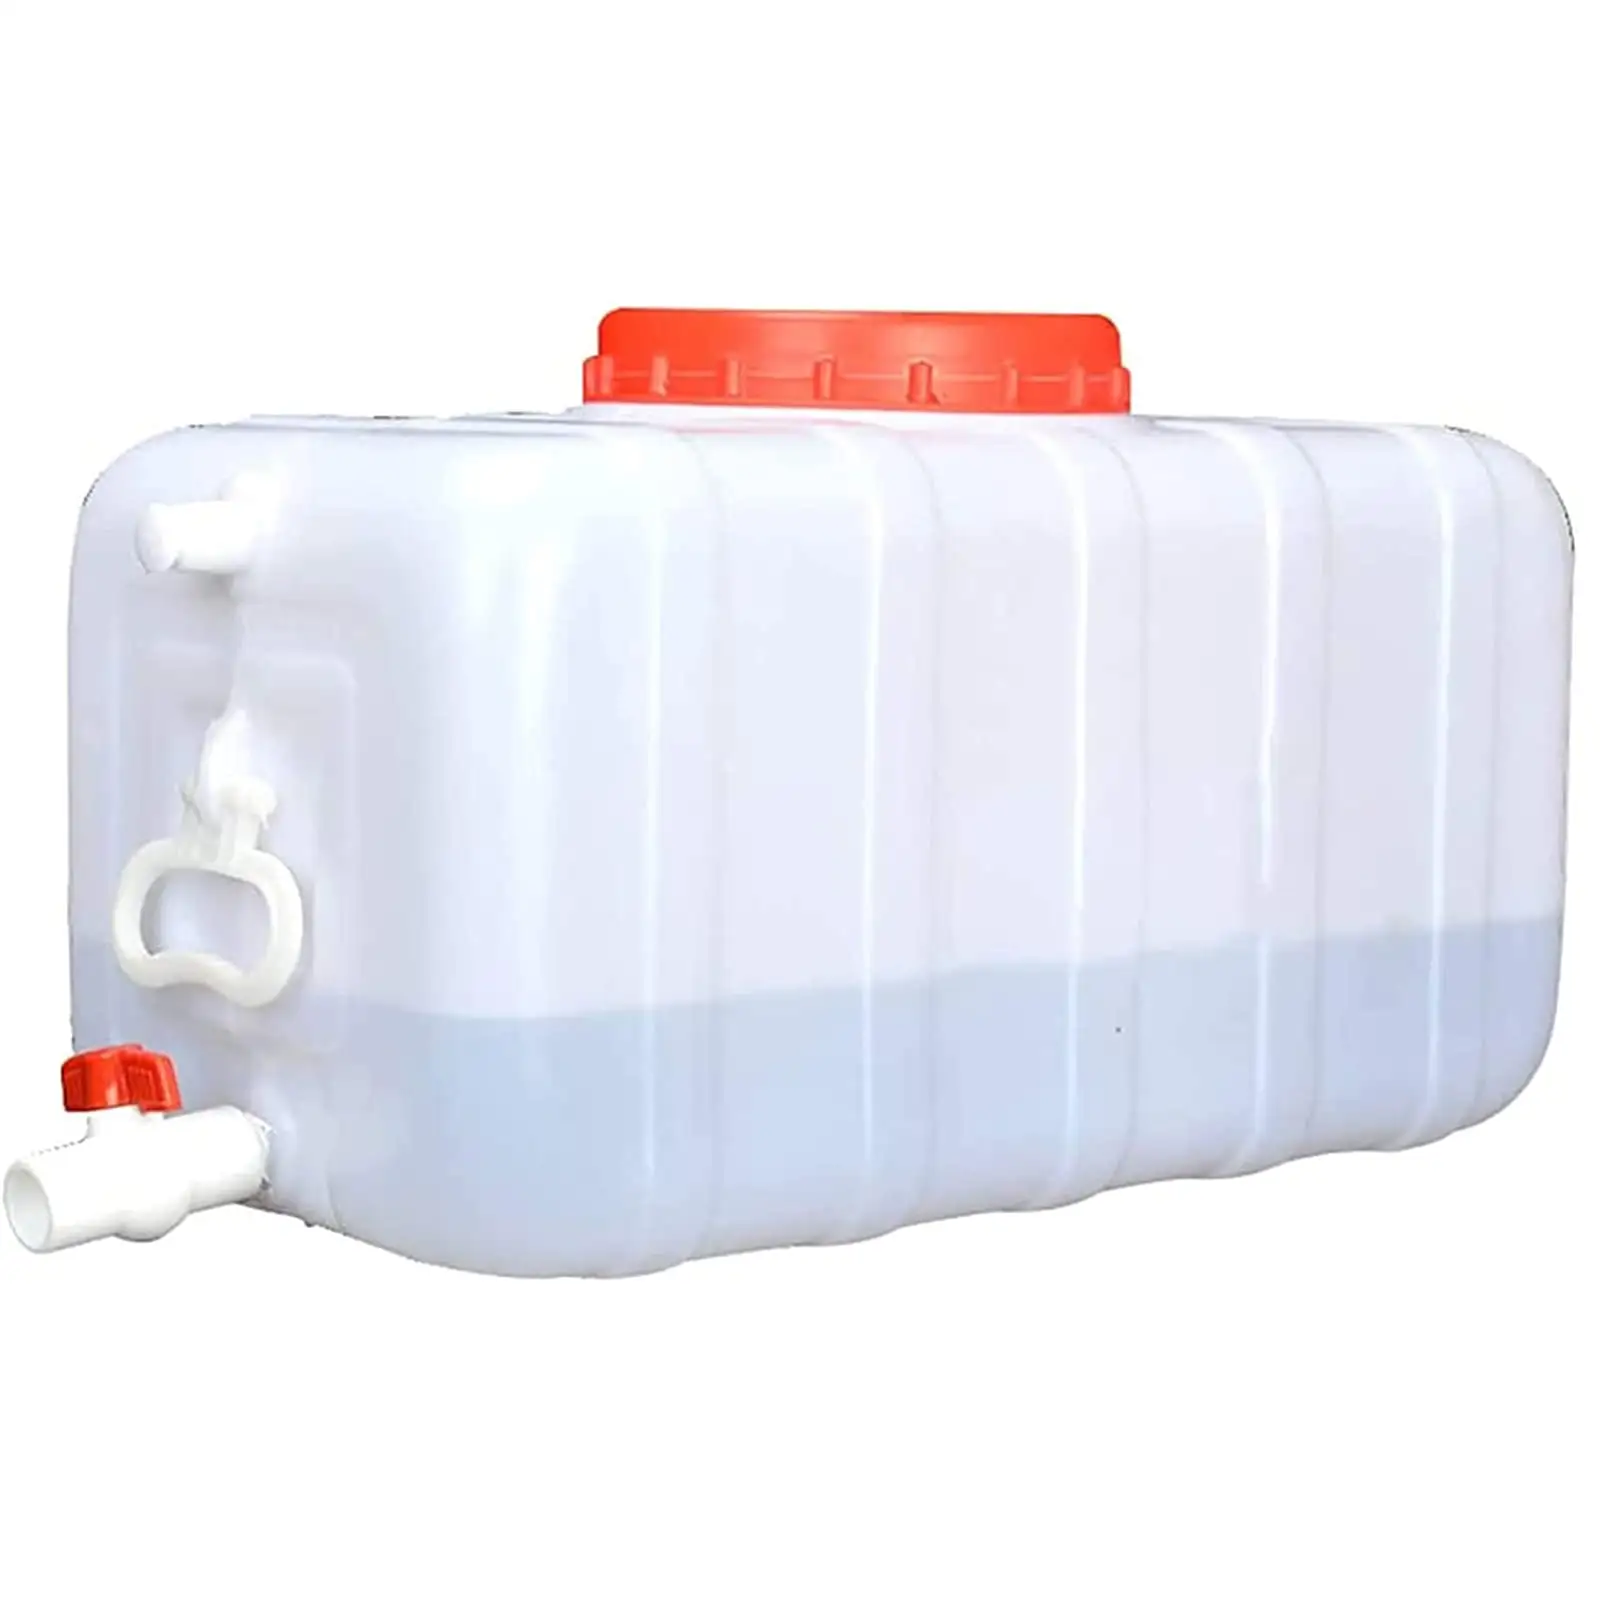 水タンク1000 ltrポータブル貯水タンクプラスチック製水タンクSMC